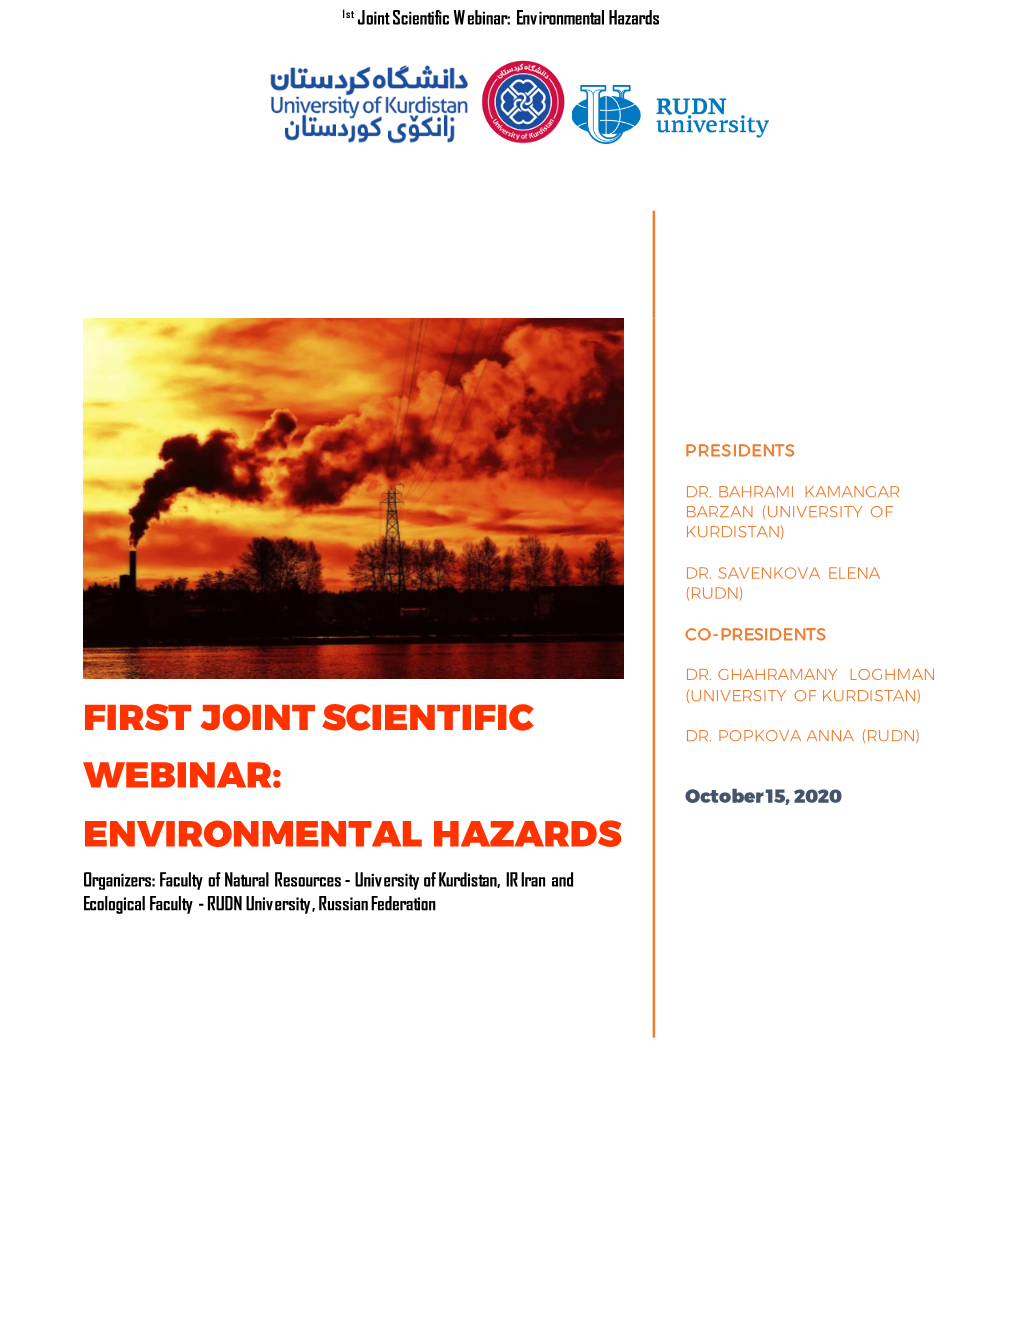 First Joint Scientific Webinar: Environmental Hazards